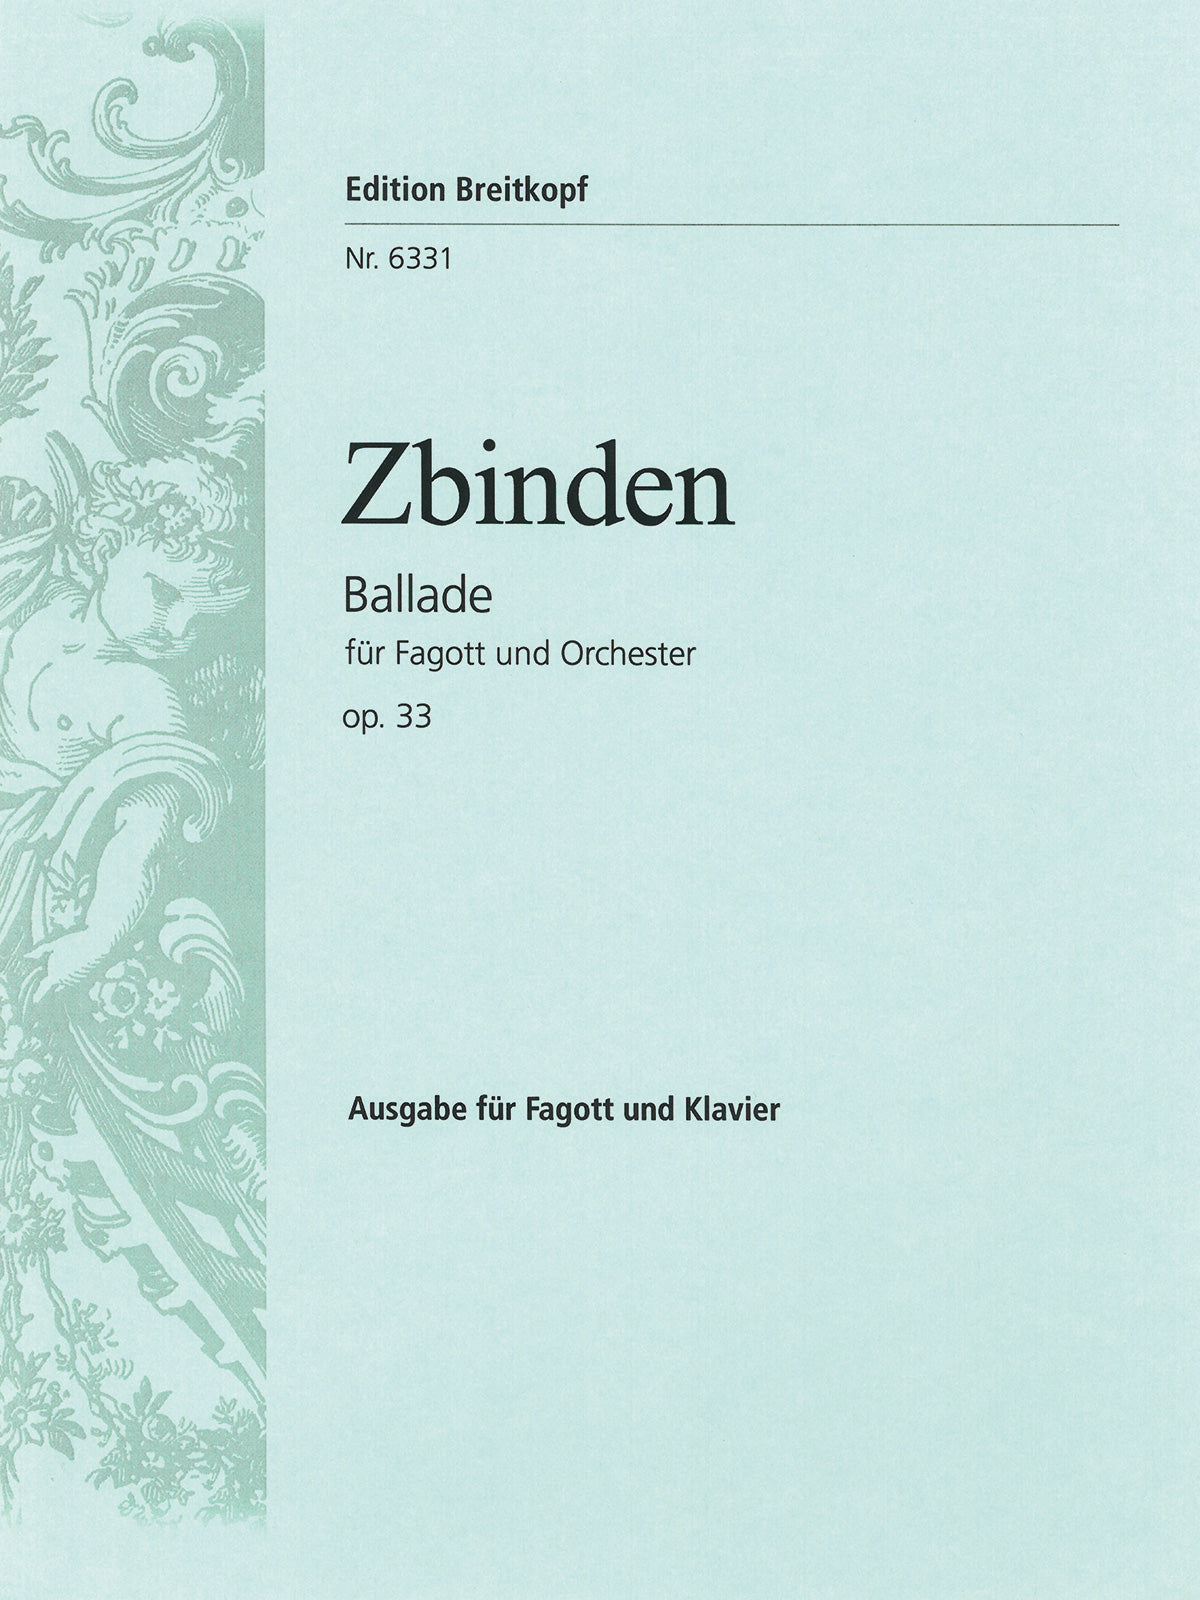 Zbinden: Ballade, Op. 33